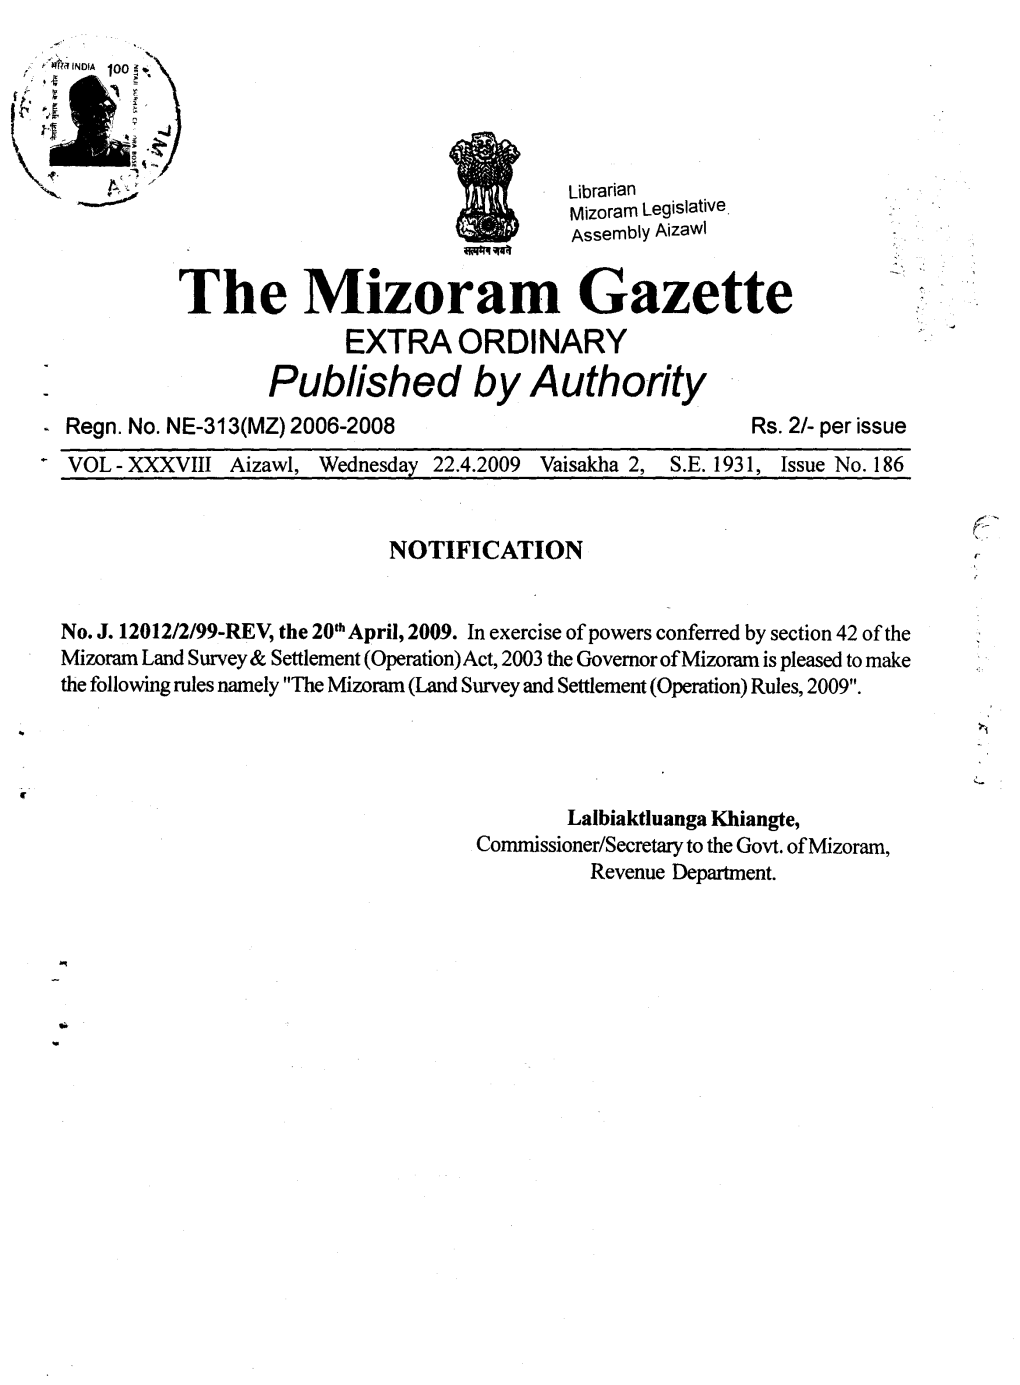 The Mizoram Gazette EXTRA ORDINARY Published Byauthority